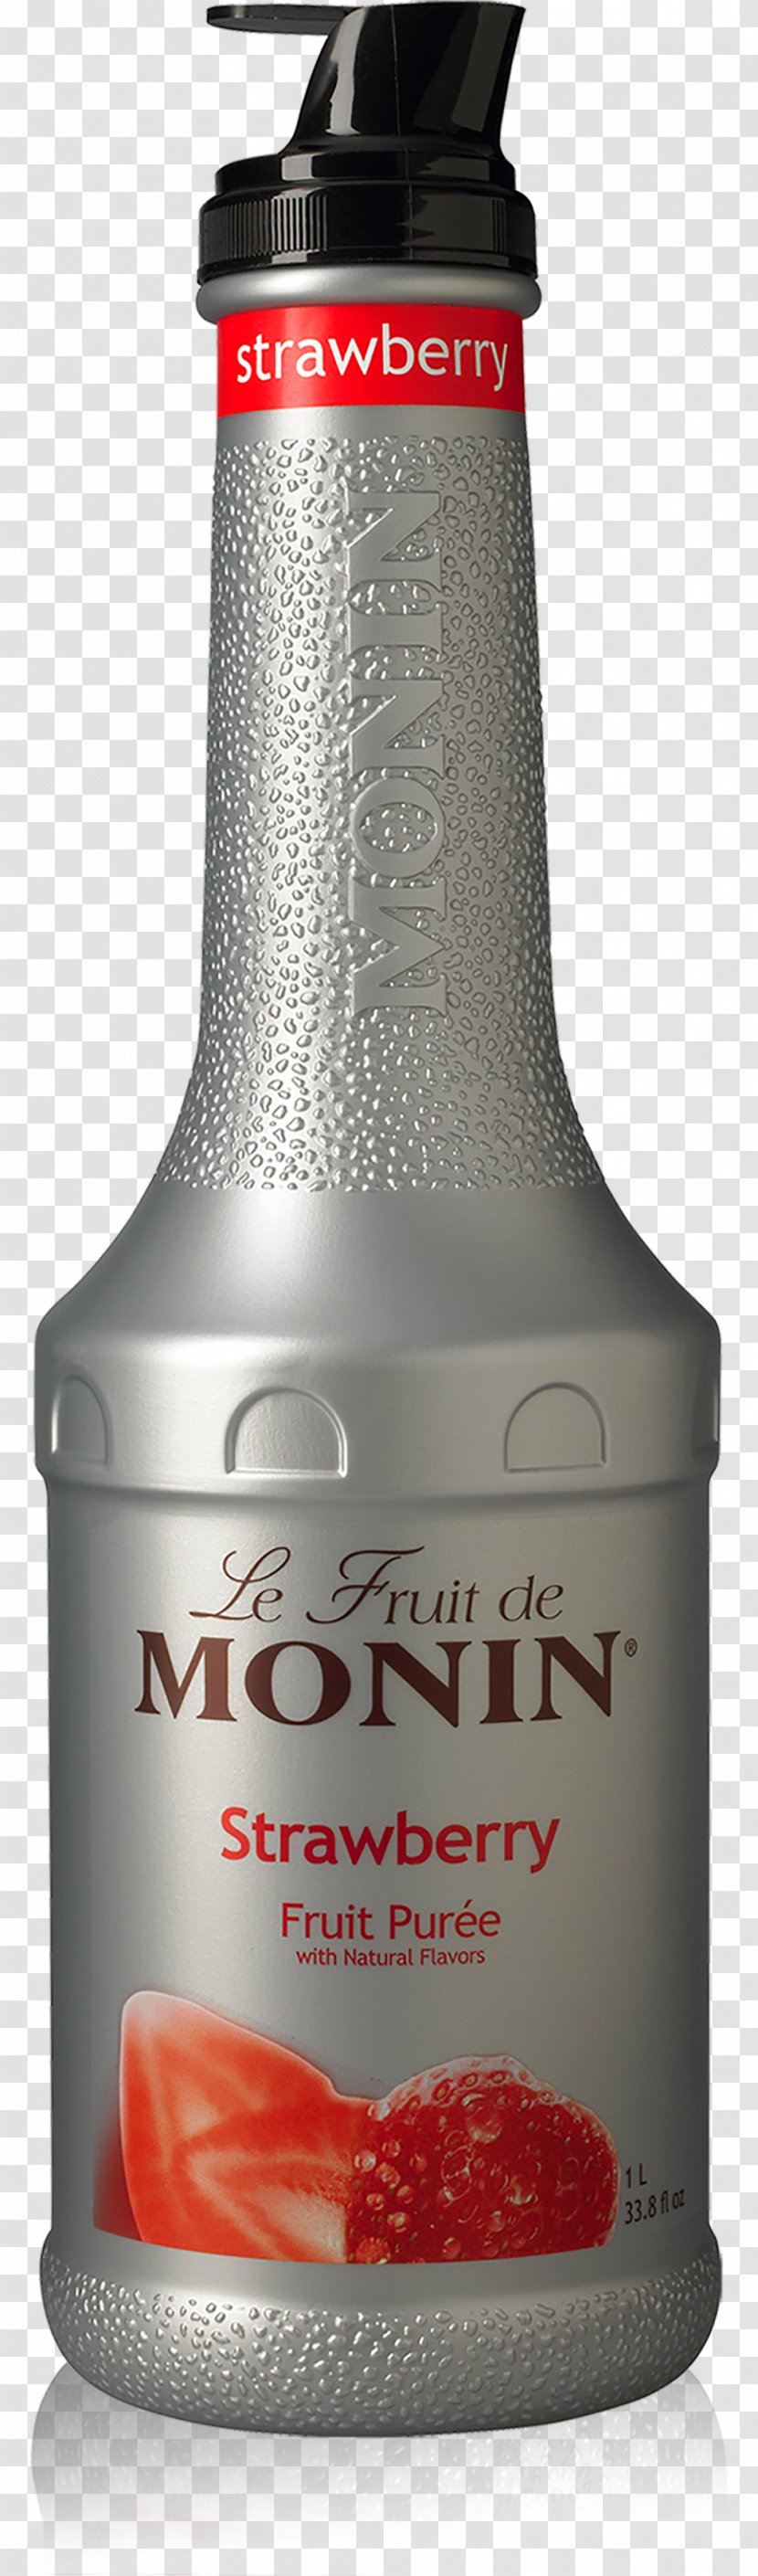 Iced Tea Cocktail Purée Monin, Inc. Strawberry - Bottle Transparent PNG